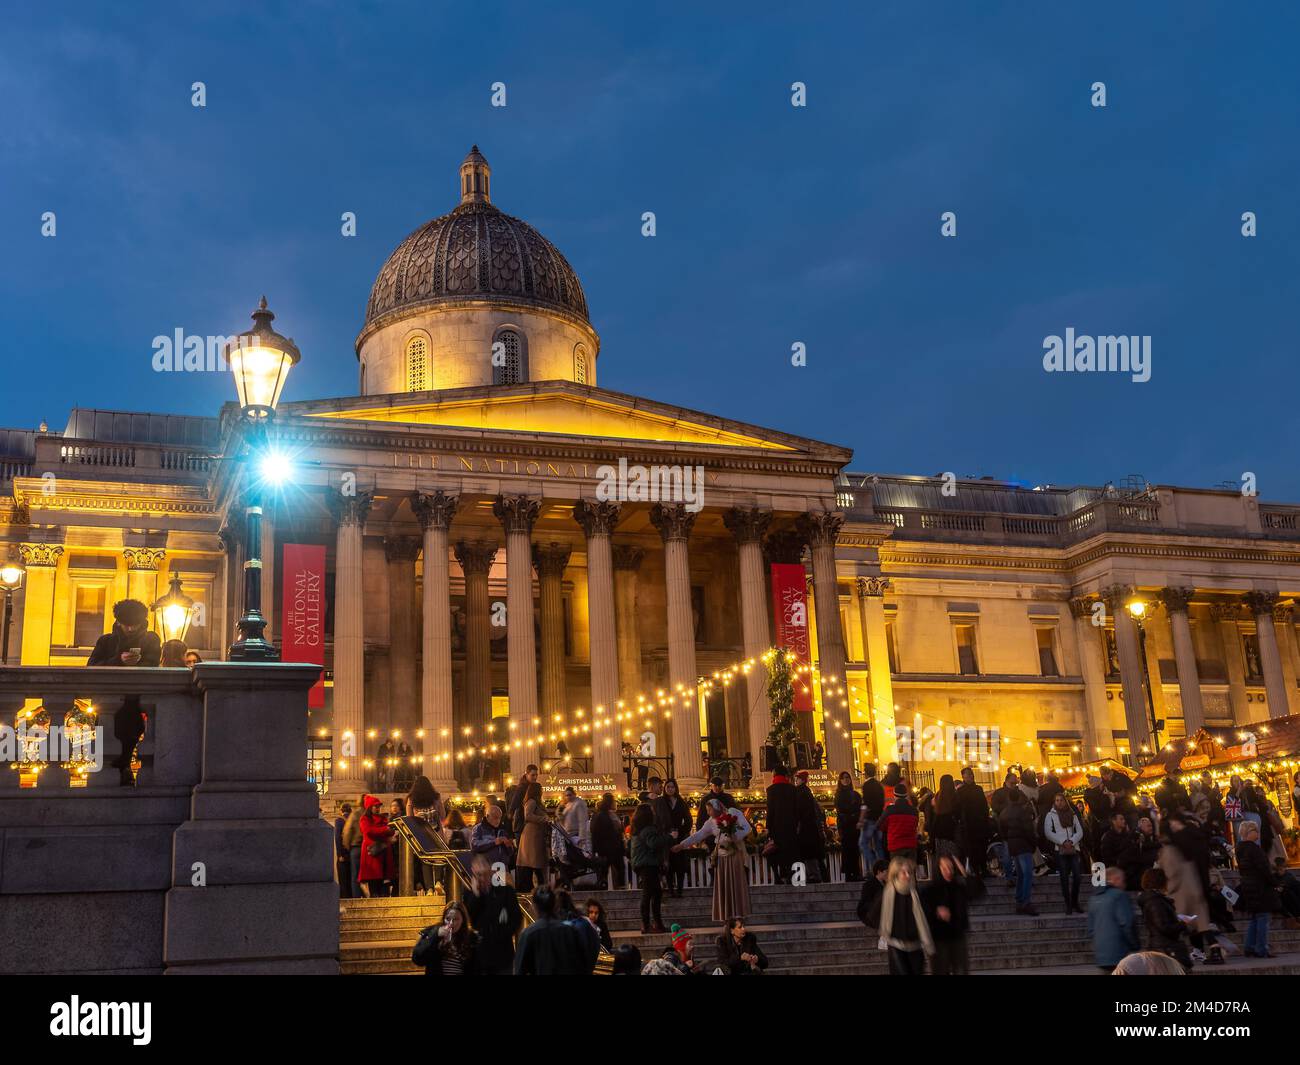 Londres, Inglaterra, Reino Unido - 20 de diciembre de 2022: Mercado de Navidad al aire libre con gente disfrutando de las vacaciones de invierno frente al edificio de la Galería Nacional Foto de stock